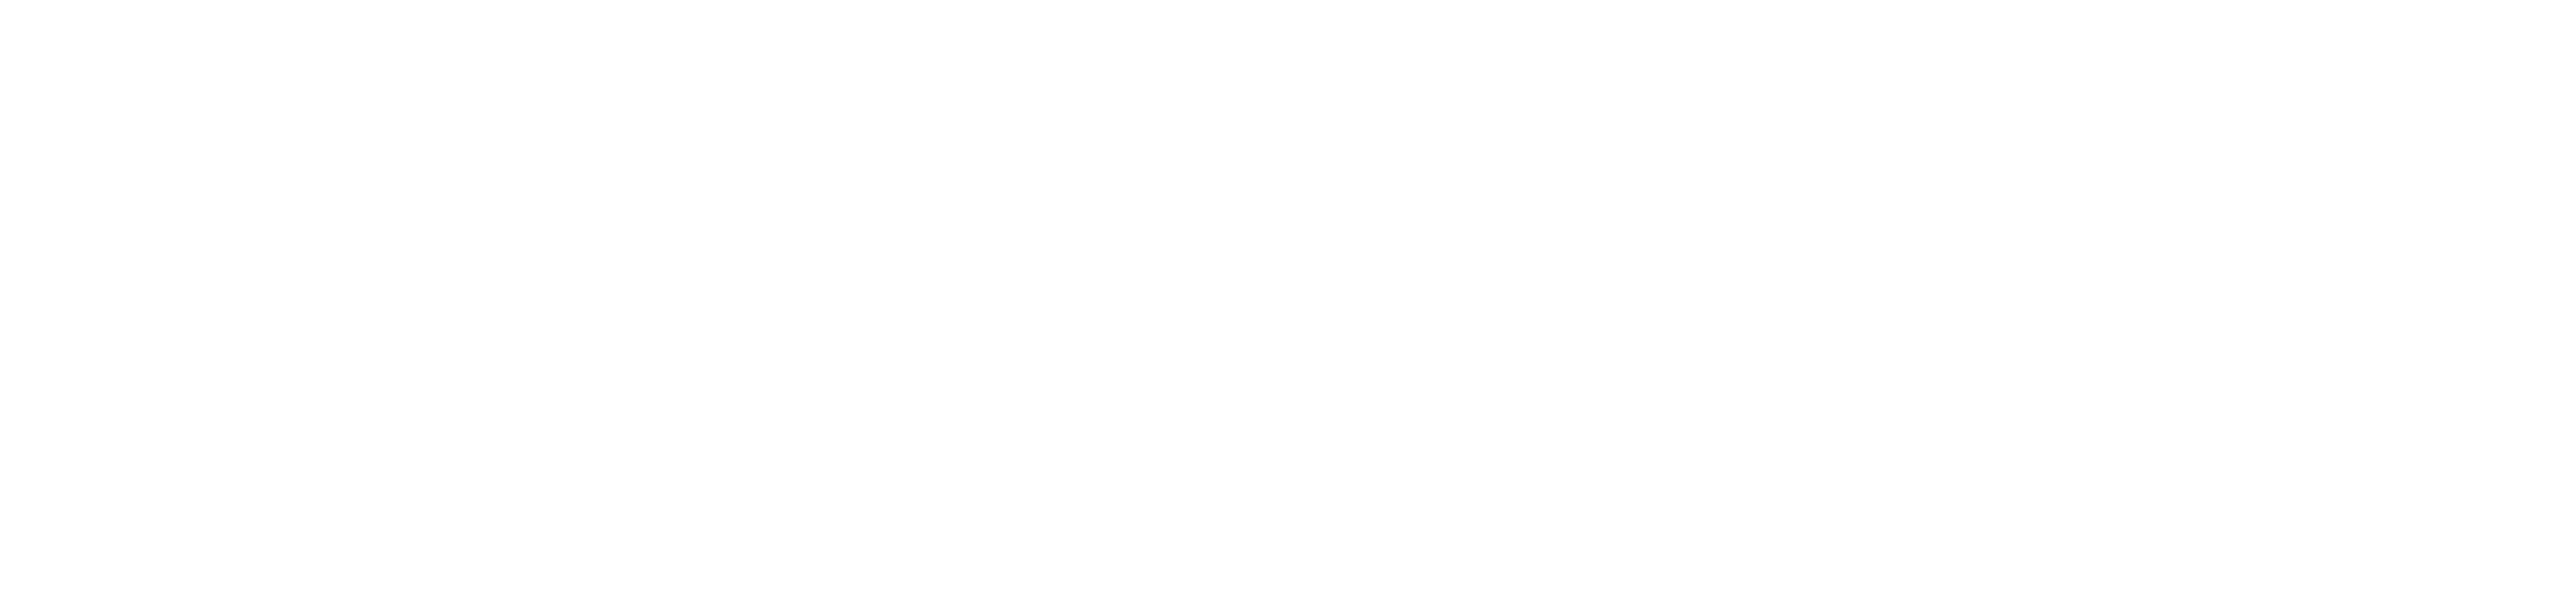 Prowise logo White